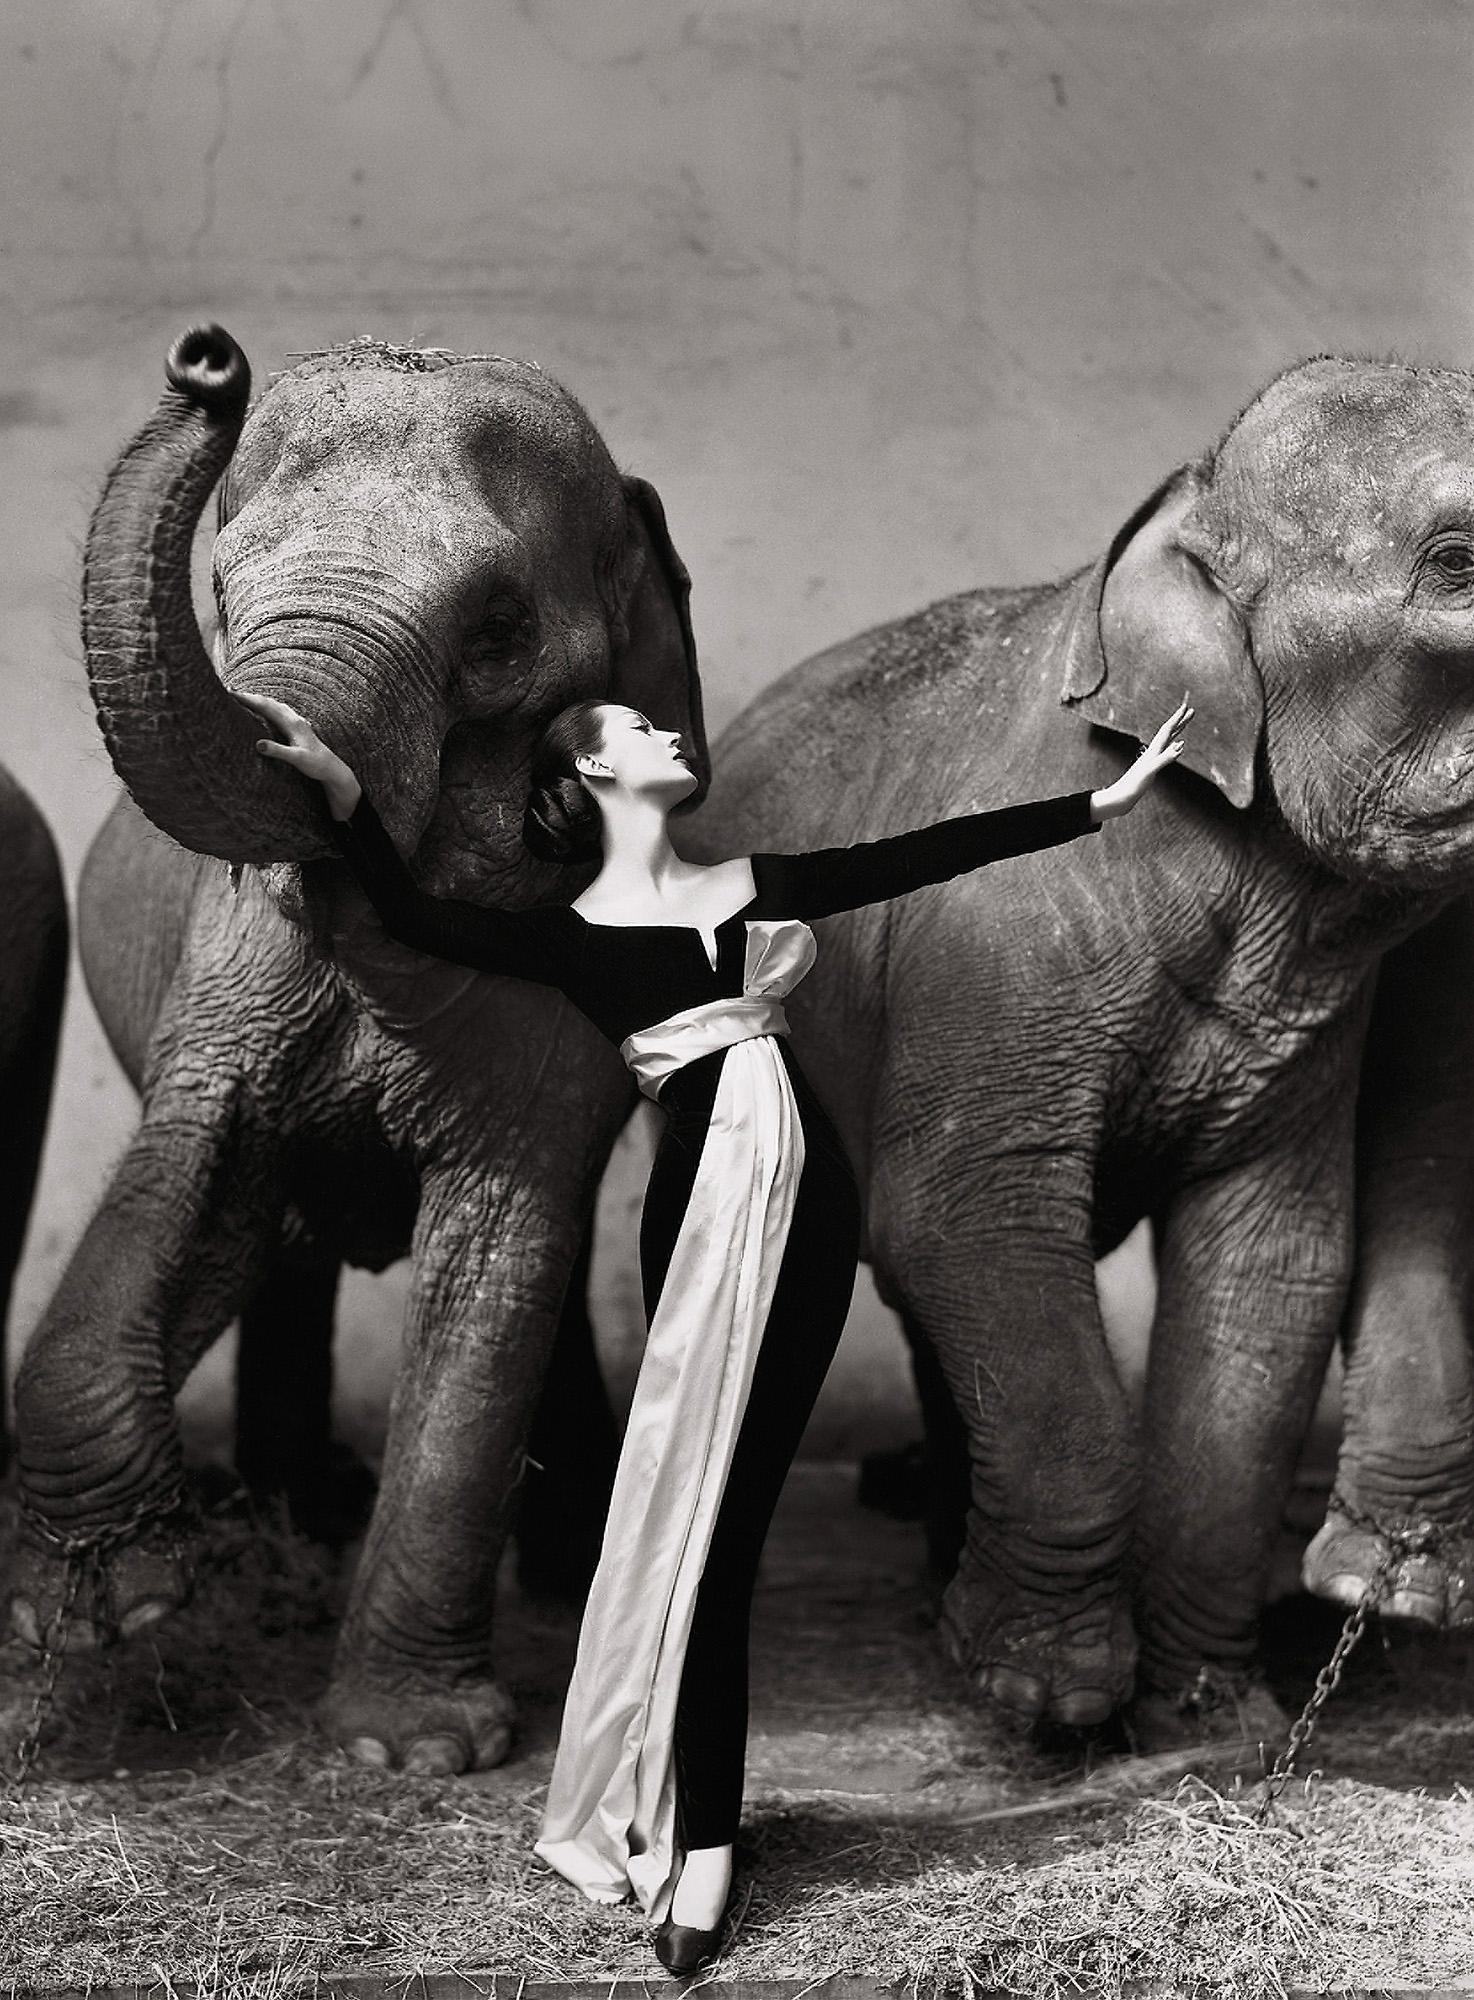 På en cirkus i Paris fotograferade Richard Avedon för modehuset Dior 1955. Kontrasterna mellan de stora, smutsiga elefanterna och den rena, eleganta kvinnan var smått chockerande, ingen hade tidigare sett något liknande.